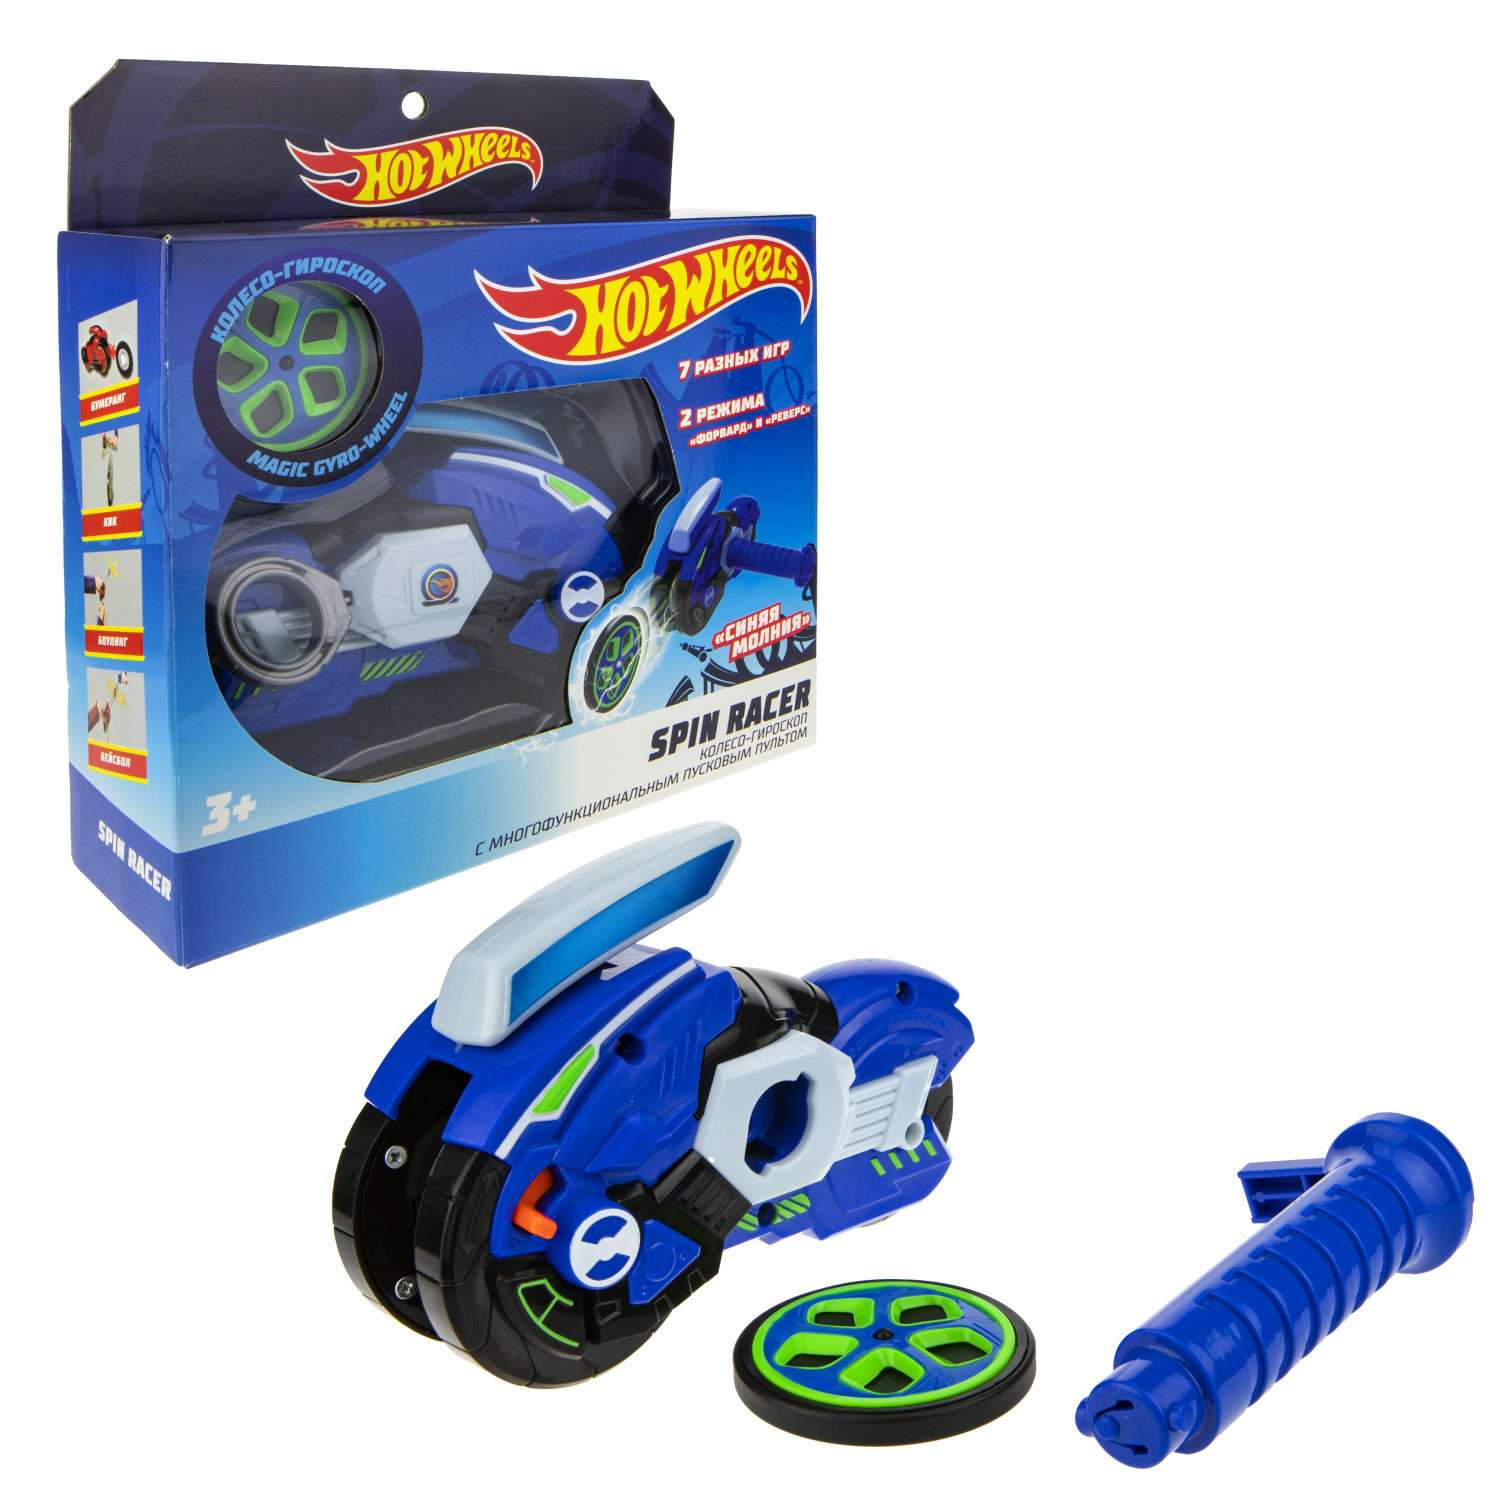 Игровой набор Hot Wheels Spin Racer Синяя Молния игрушечный мотоцикл с колесом-гироскопом Т19373 - фото 2